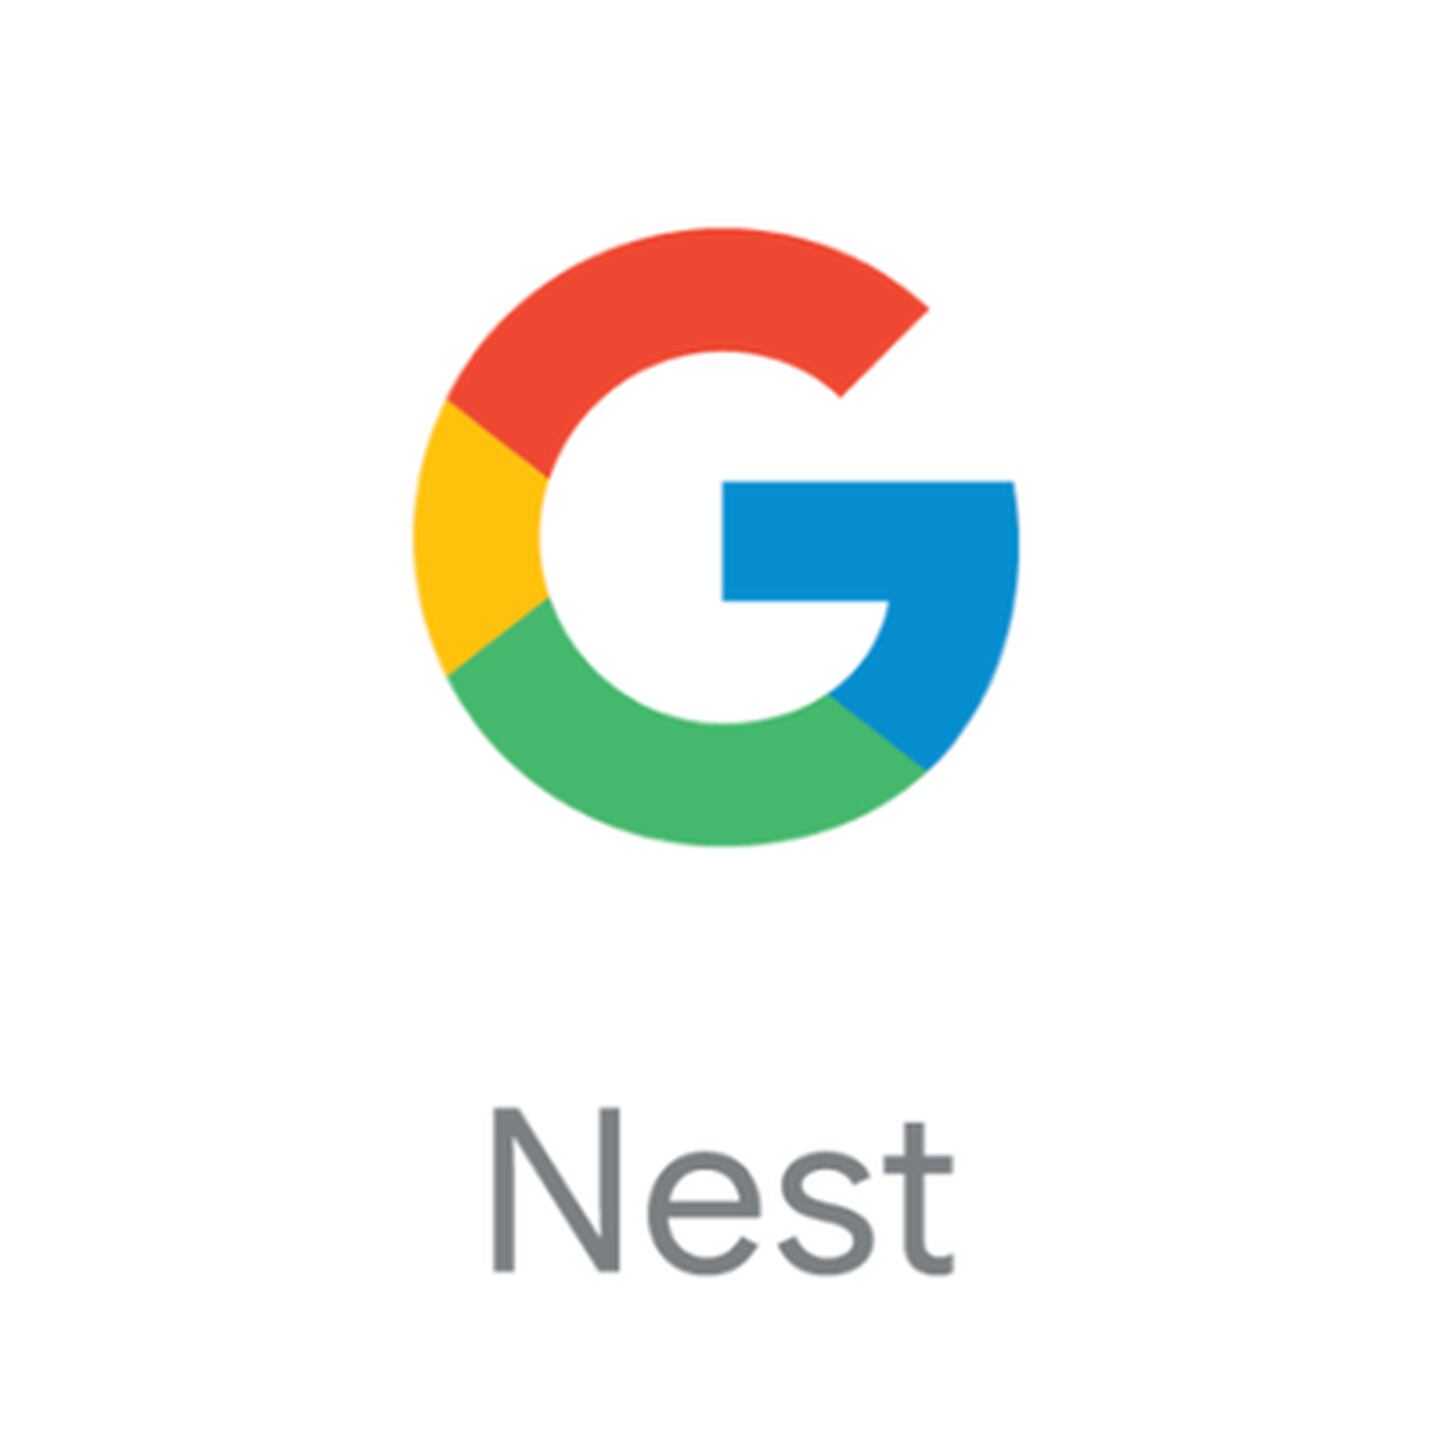 New Google Nest Logo